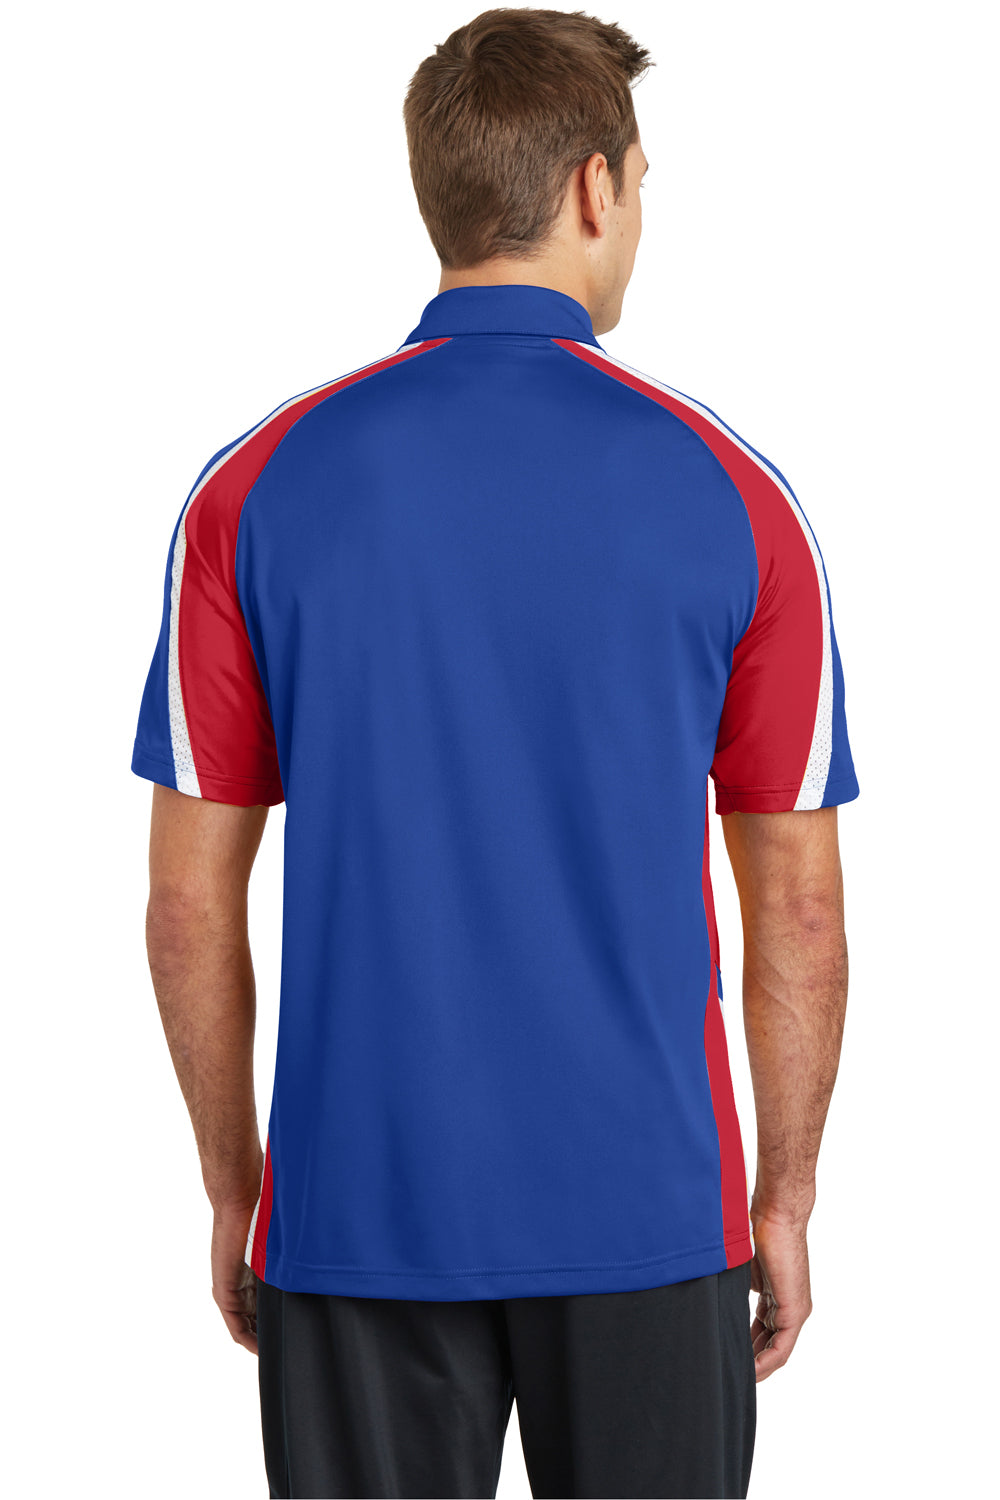 Sport-Tek ST654 Mens Sport-Wick Moisture Wicking Short Sleeve Polo Shirt Royal Blue/Red/White Back